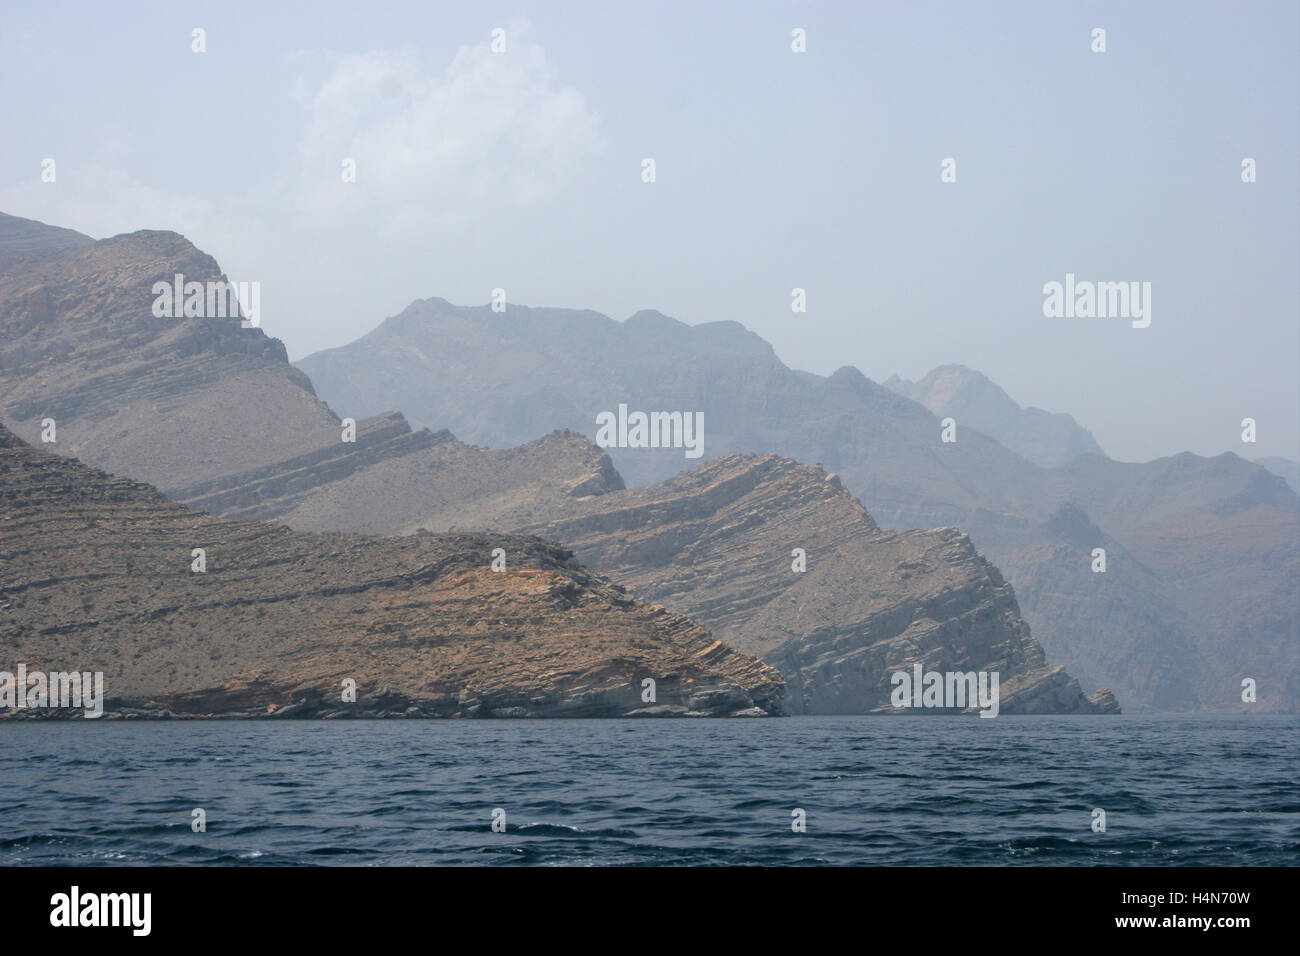 Die wilde Landschaft und Klippen der Halbinsel Musandam im nördlichen Oman betrachtet aus dem Golf von Oman Stockfoto